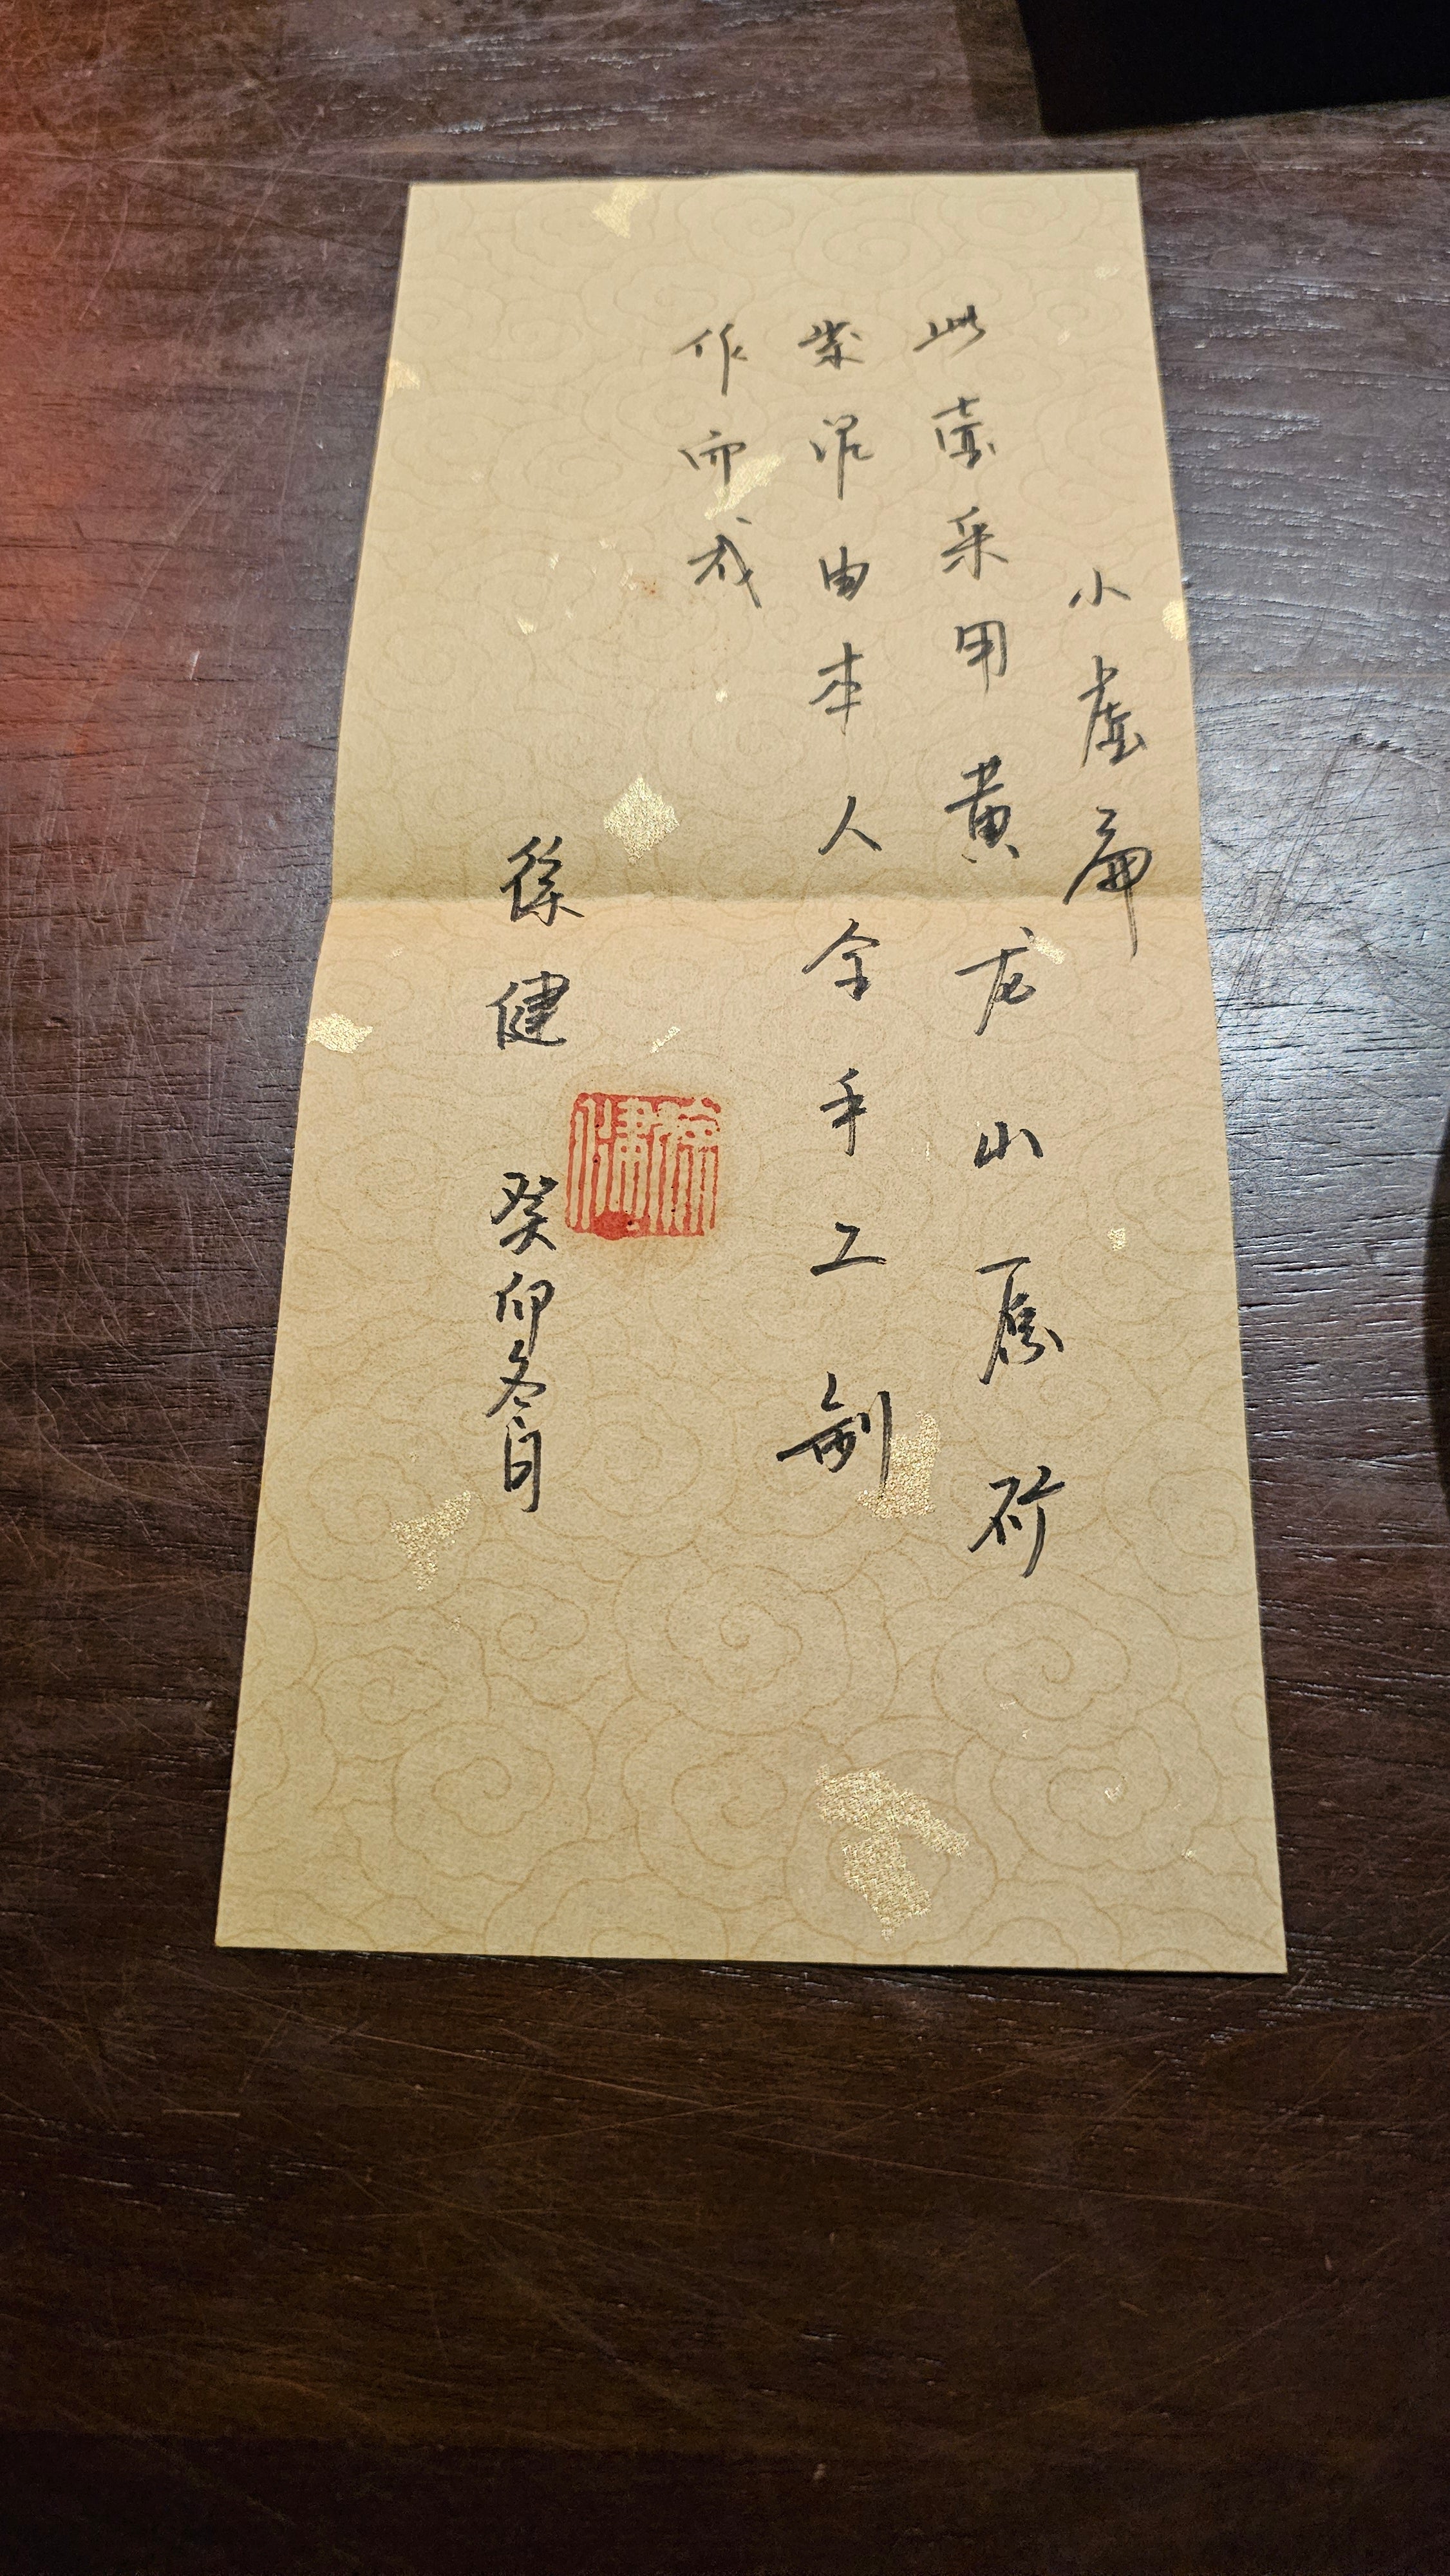 Xiao Xu Bian 小虚扁, 112.6ml, Zi Ni 紫泥, L4 Assoc Master Artist Xu Jian 徐健。